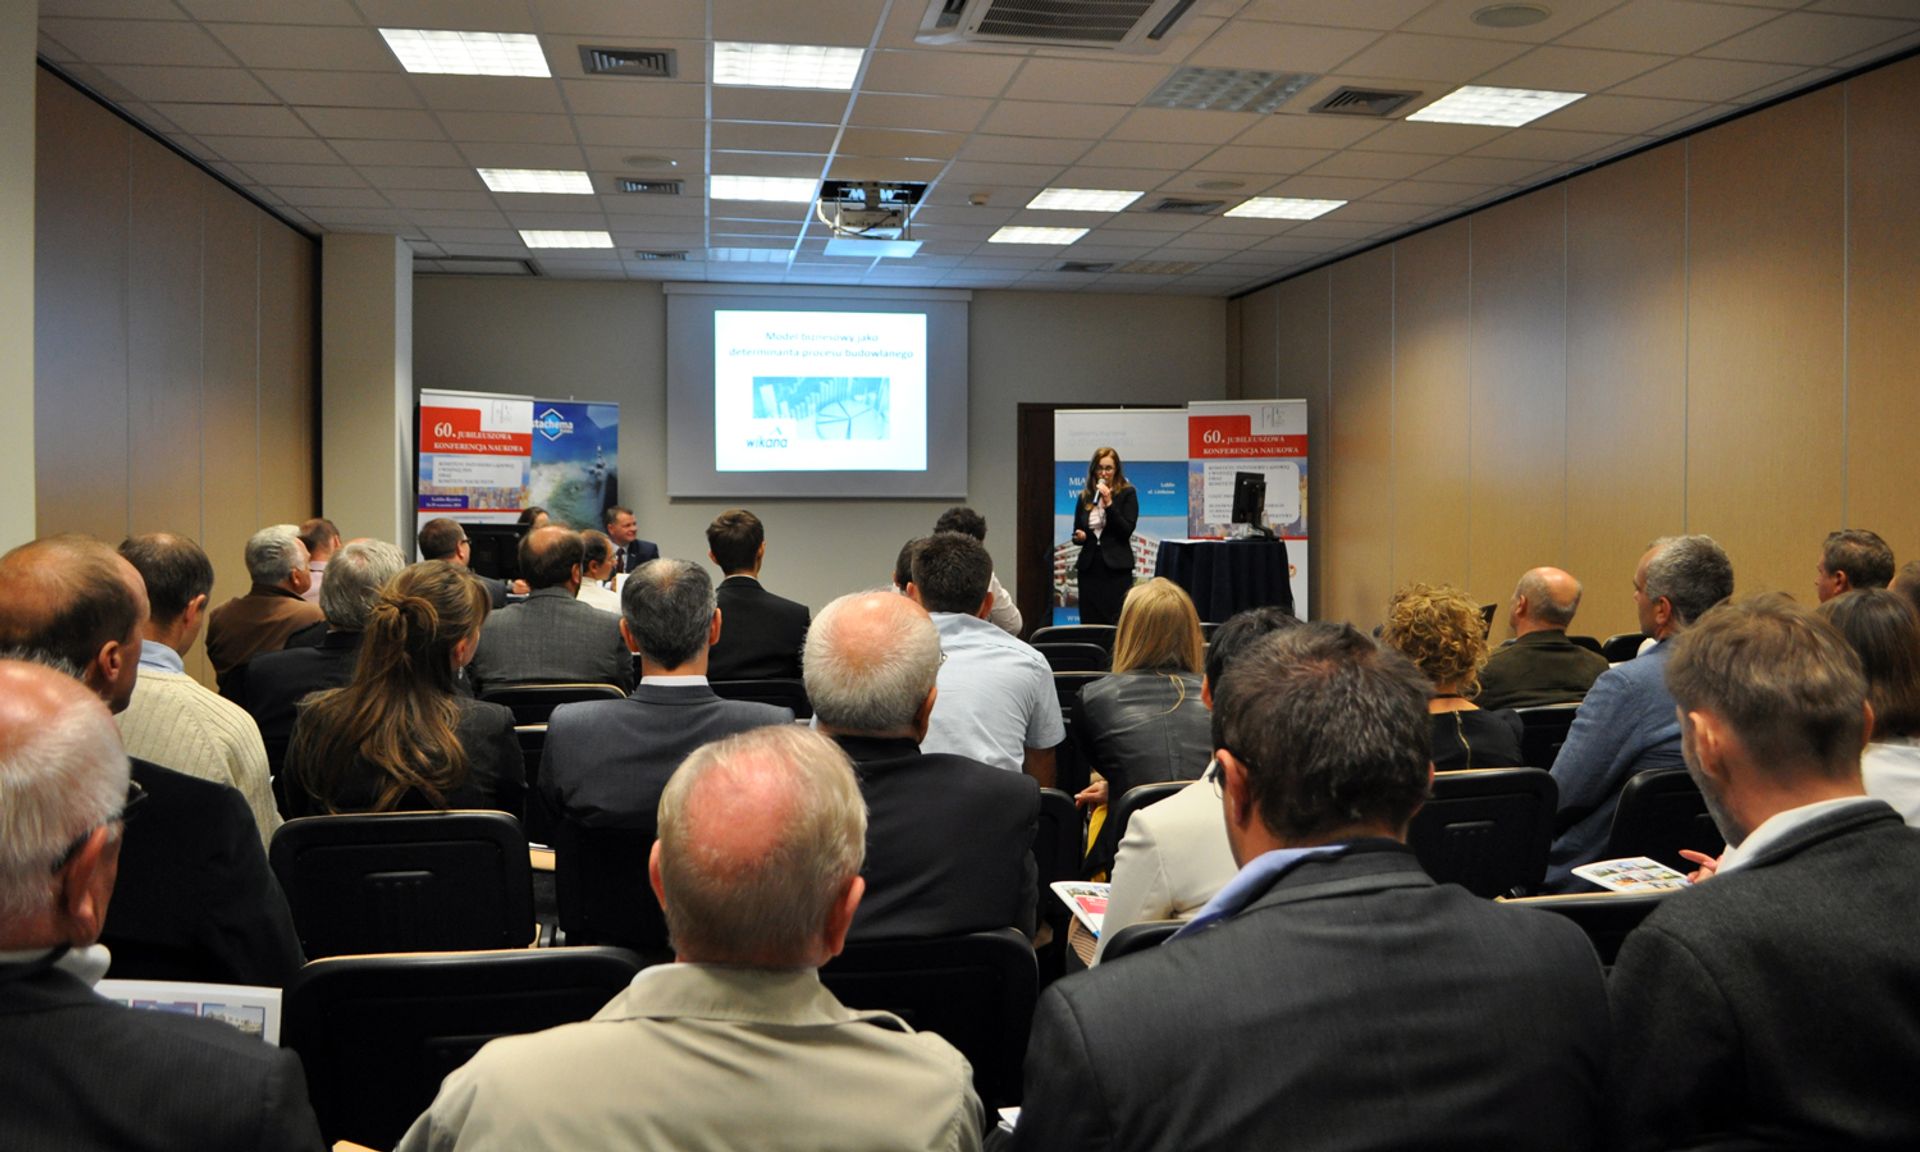  Konferencja naukowa w Krynicy: Wikana S.A. prezentuje swoją inwestycję